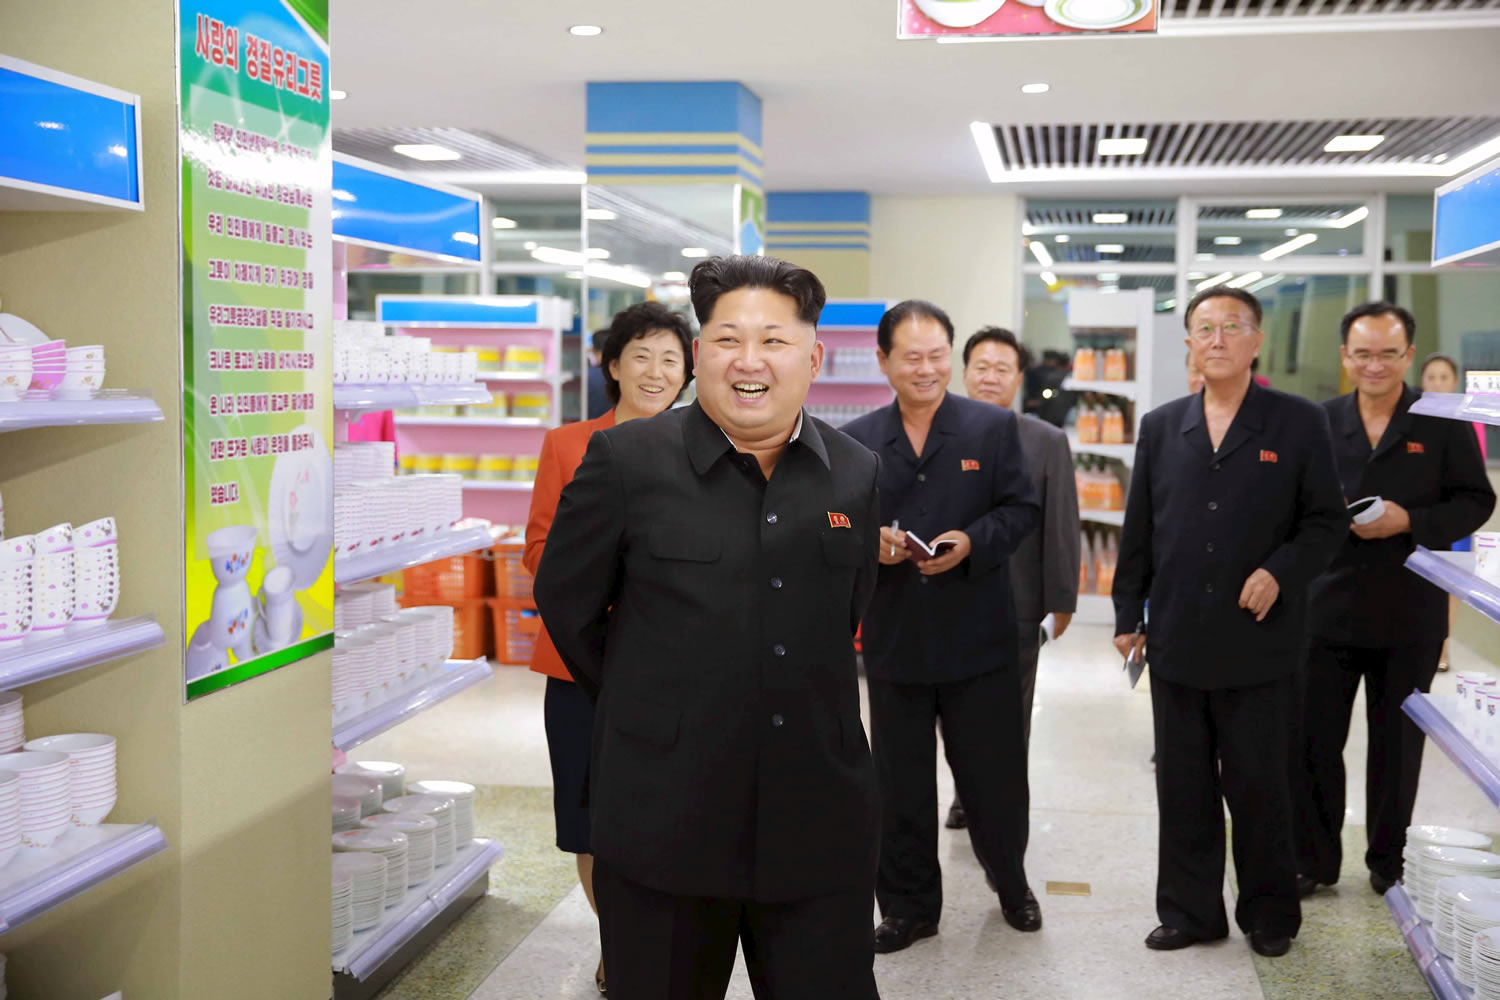 Pyongyang ultima el lanzamiento de un nuevo satélite: "nuestro programa espacial es pacífico"